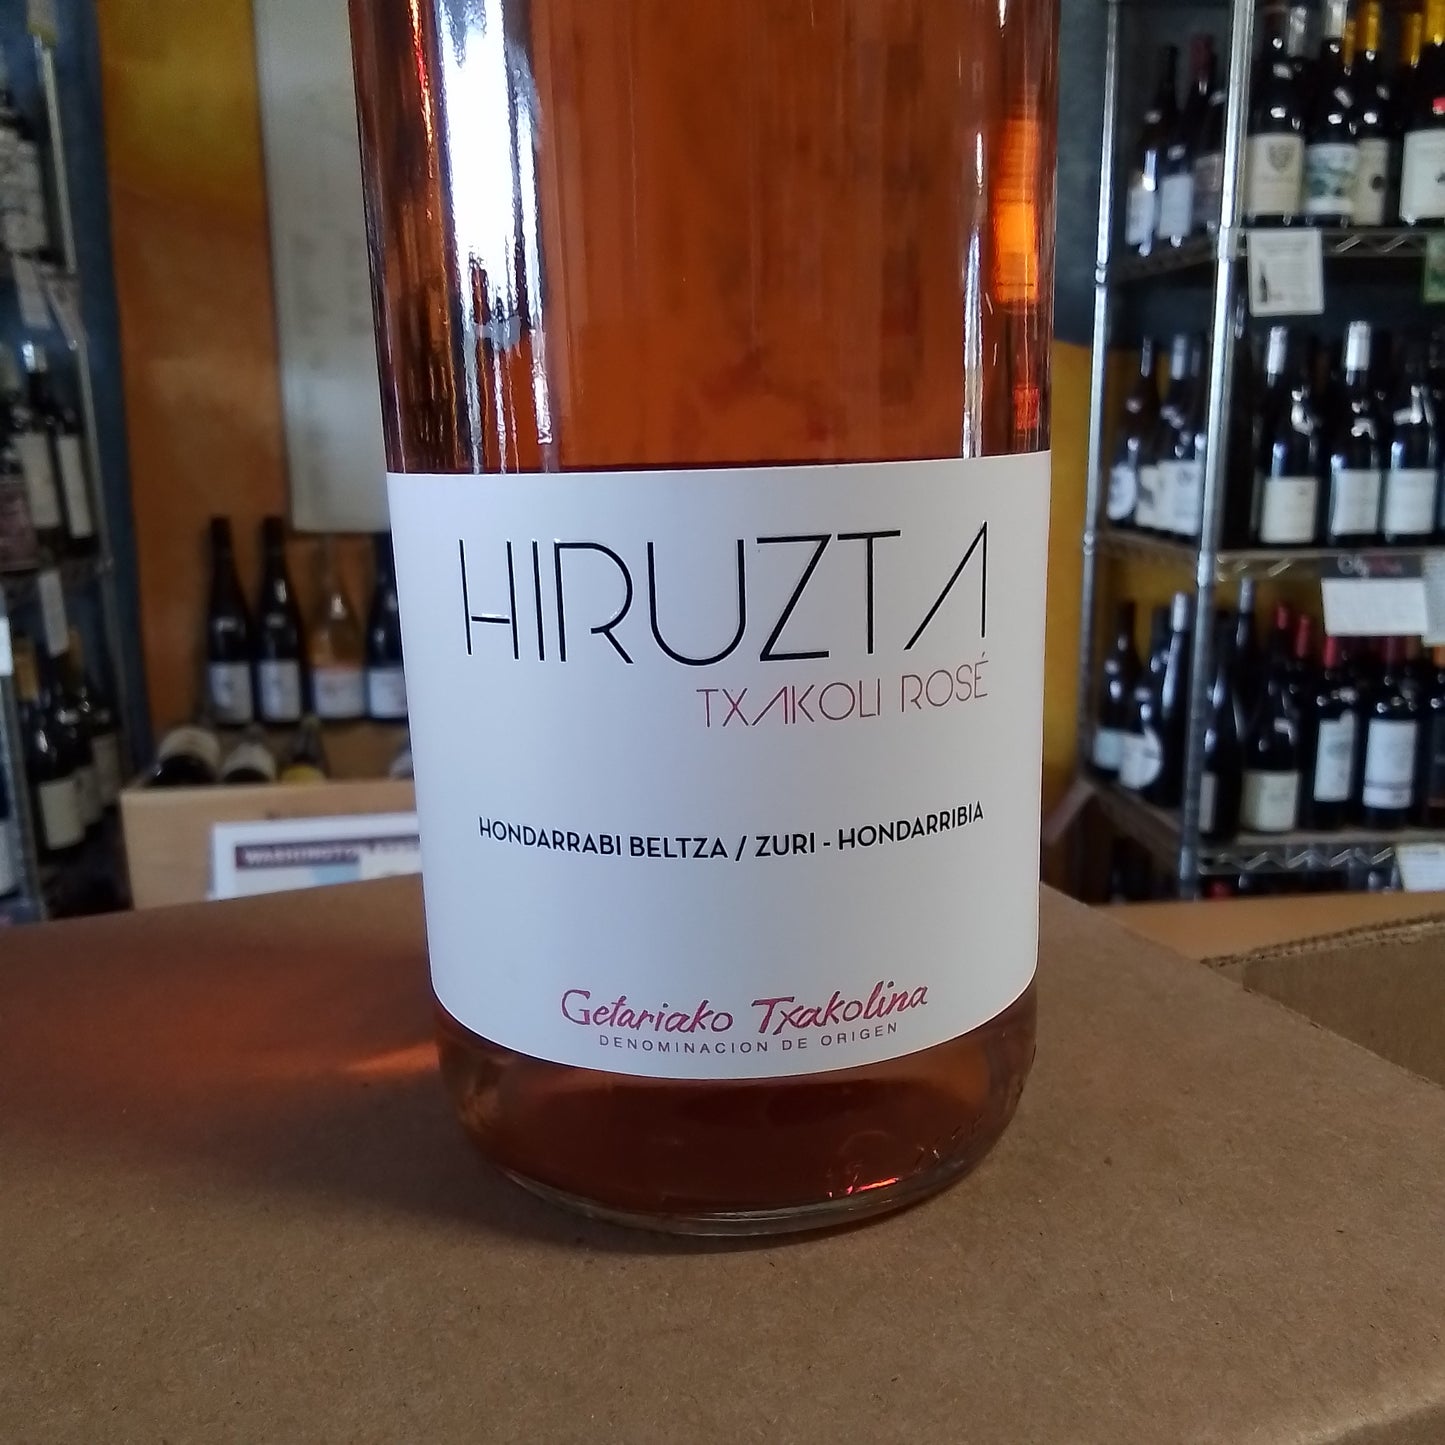 HIRUZTA 2022 Rose (Txakolina, Spain)